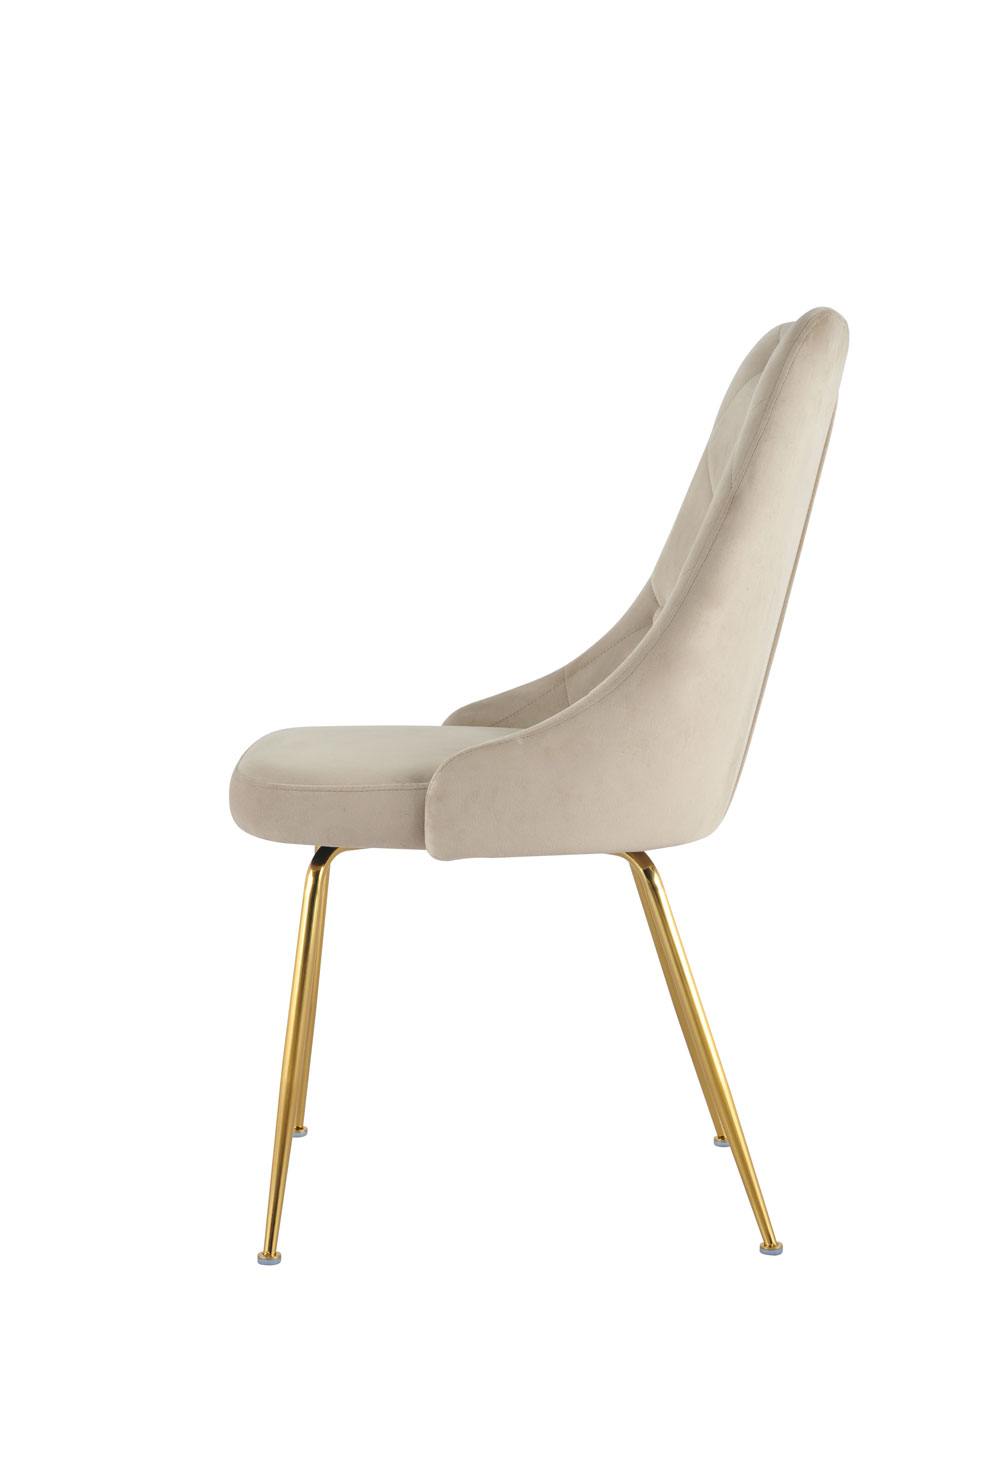 Plumeria Side Chair - Beige, Gold